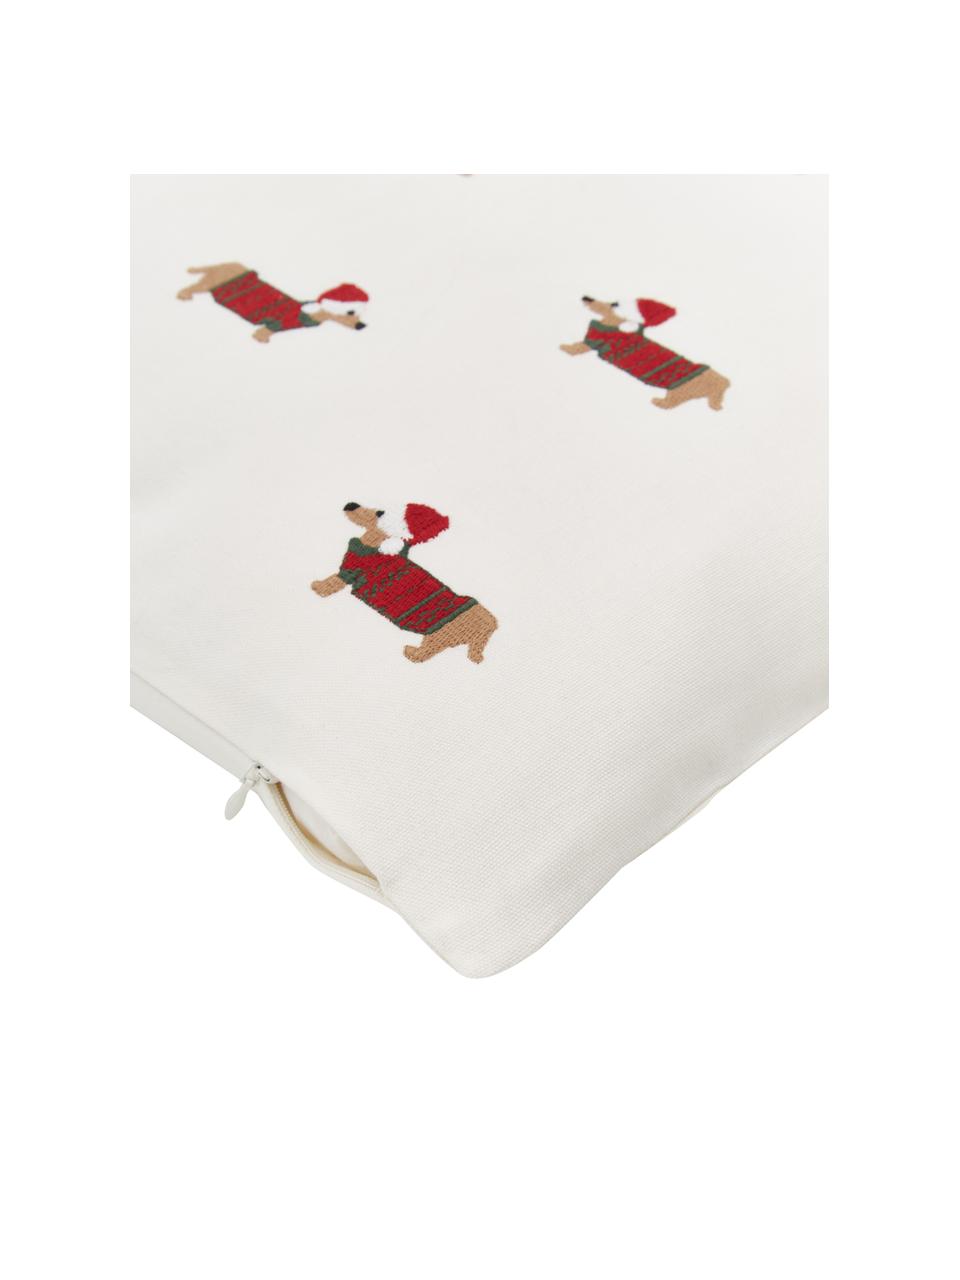 Poszewka na poduszkę Finn, 100% bawełna, Wielobarwny, kremowobiały, S 45 x D 45 cm